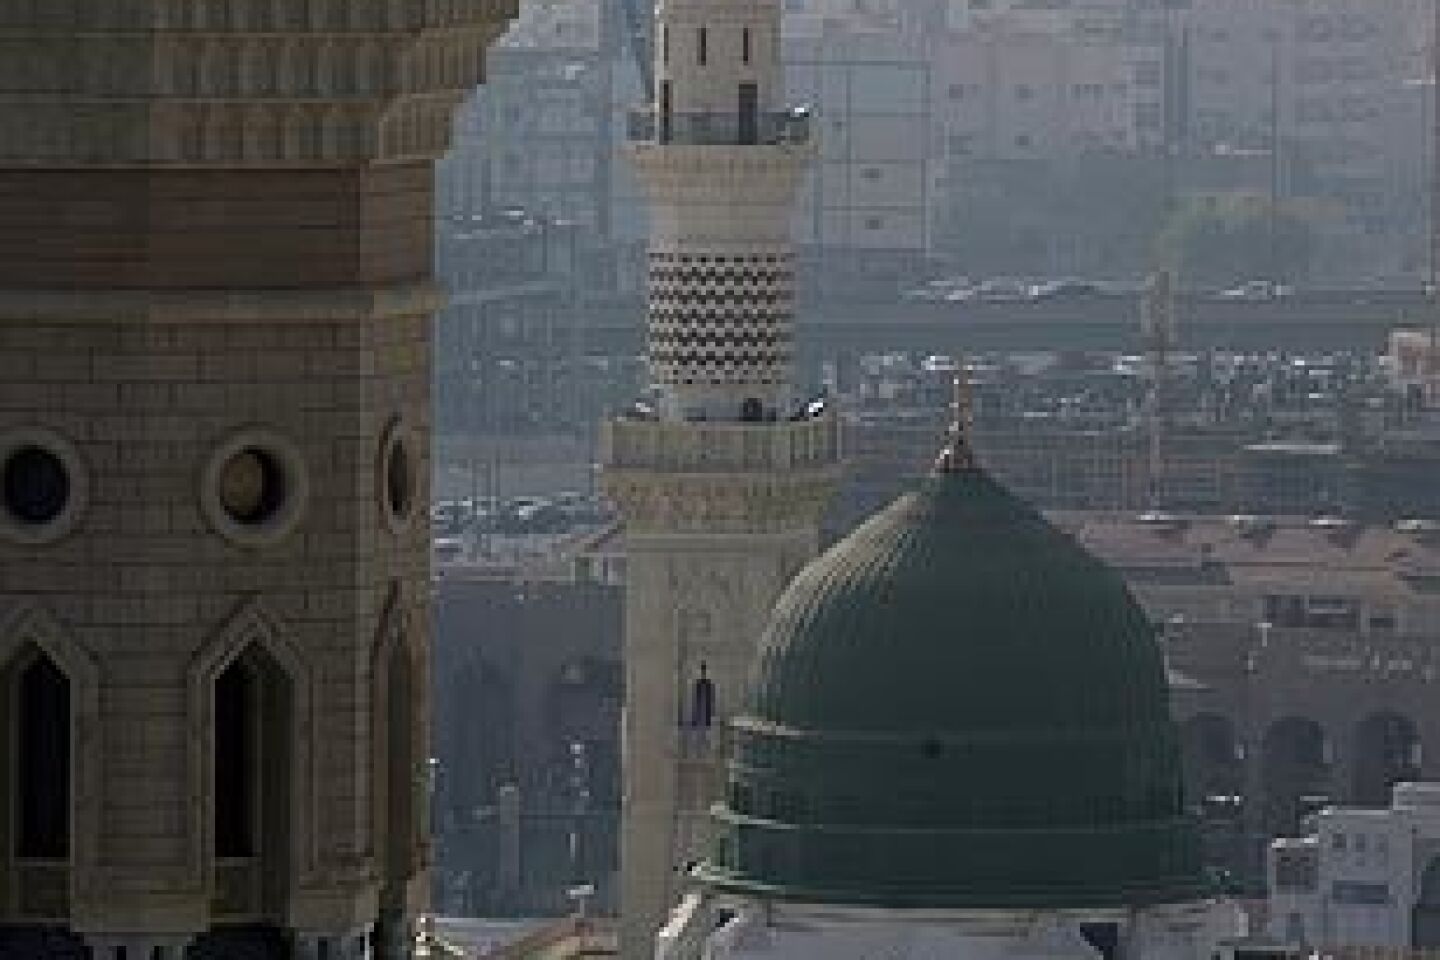 Mosque of the Prophet